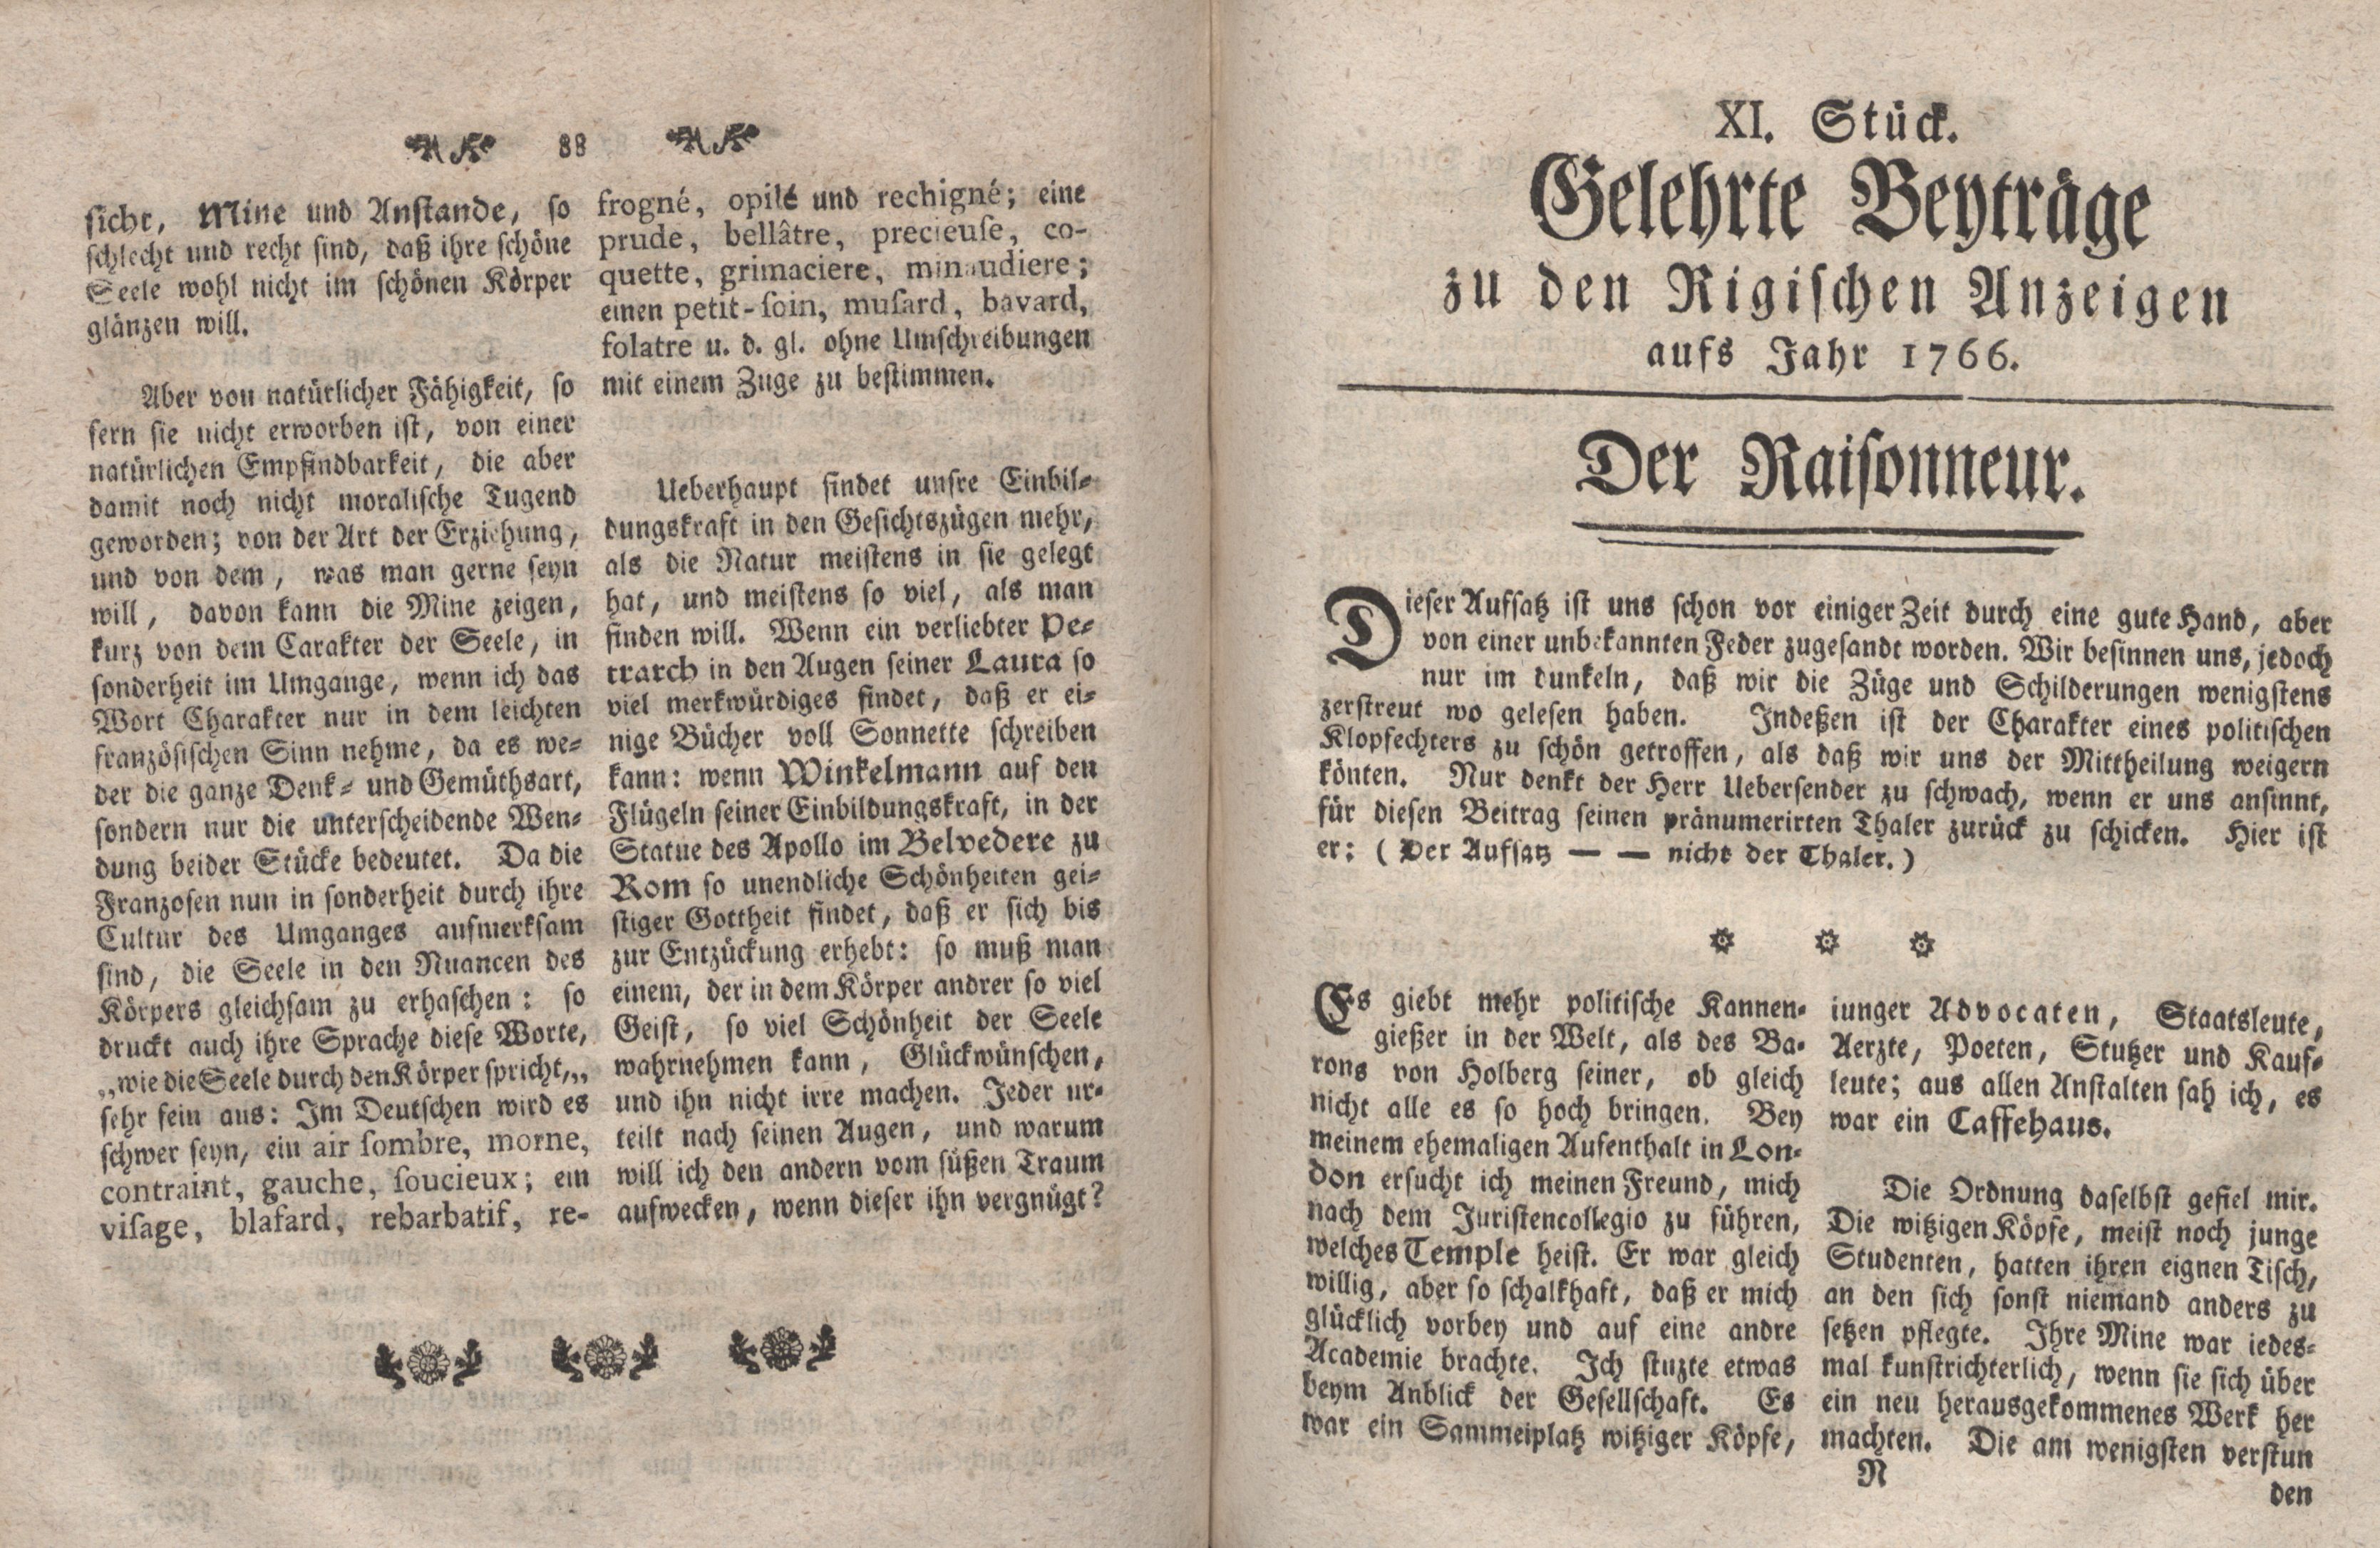 Gelehrte Beyträge zu den Rigischen Anzeigen 1766 (1766) | 45. (88-89) Main body of text